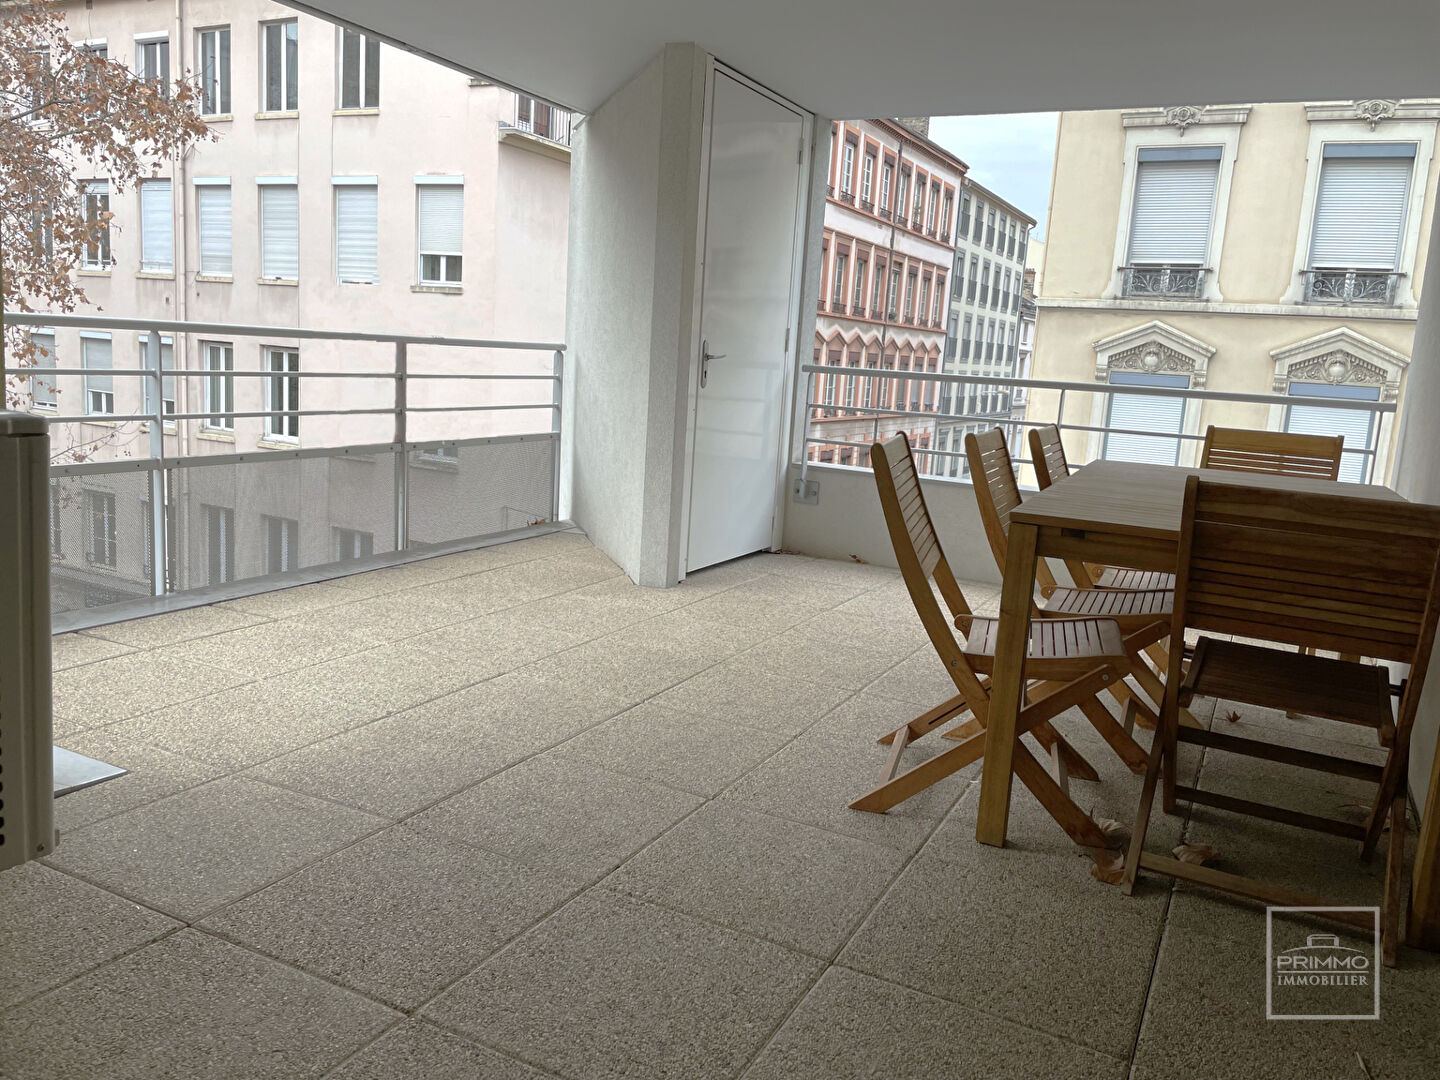 Lyon 6, Masséna, 120 m² , 4 ch. + terrasse 19 m² poss. 3 garages